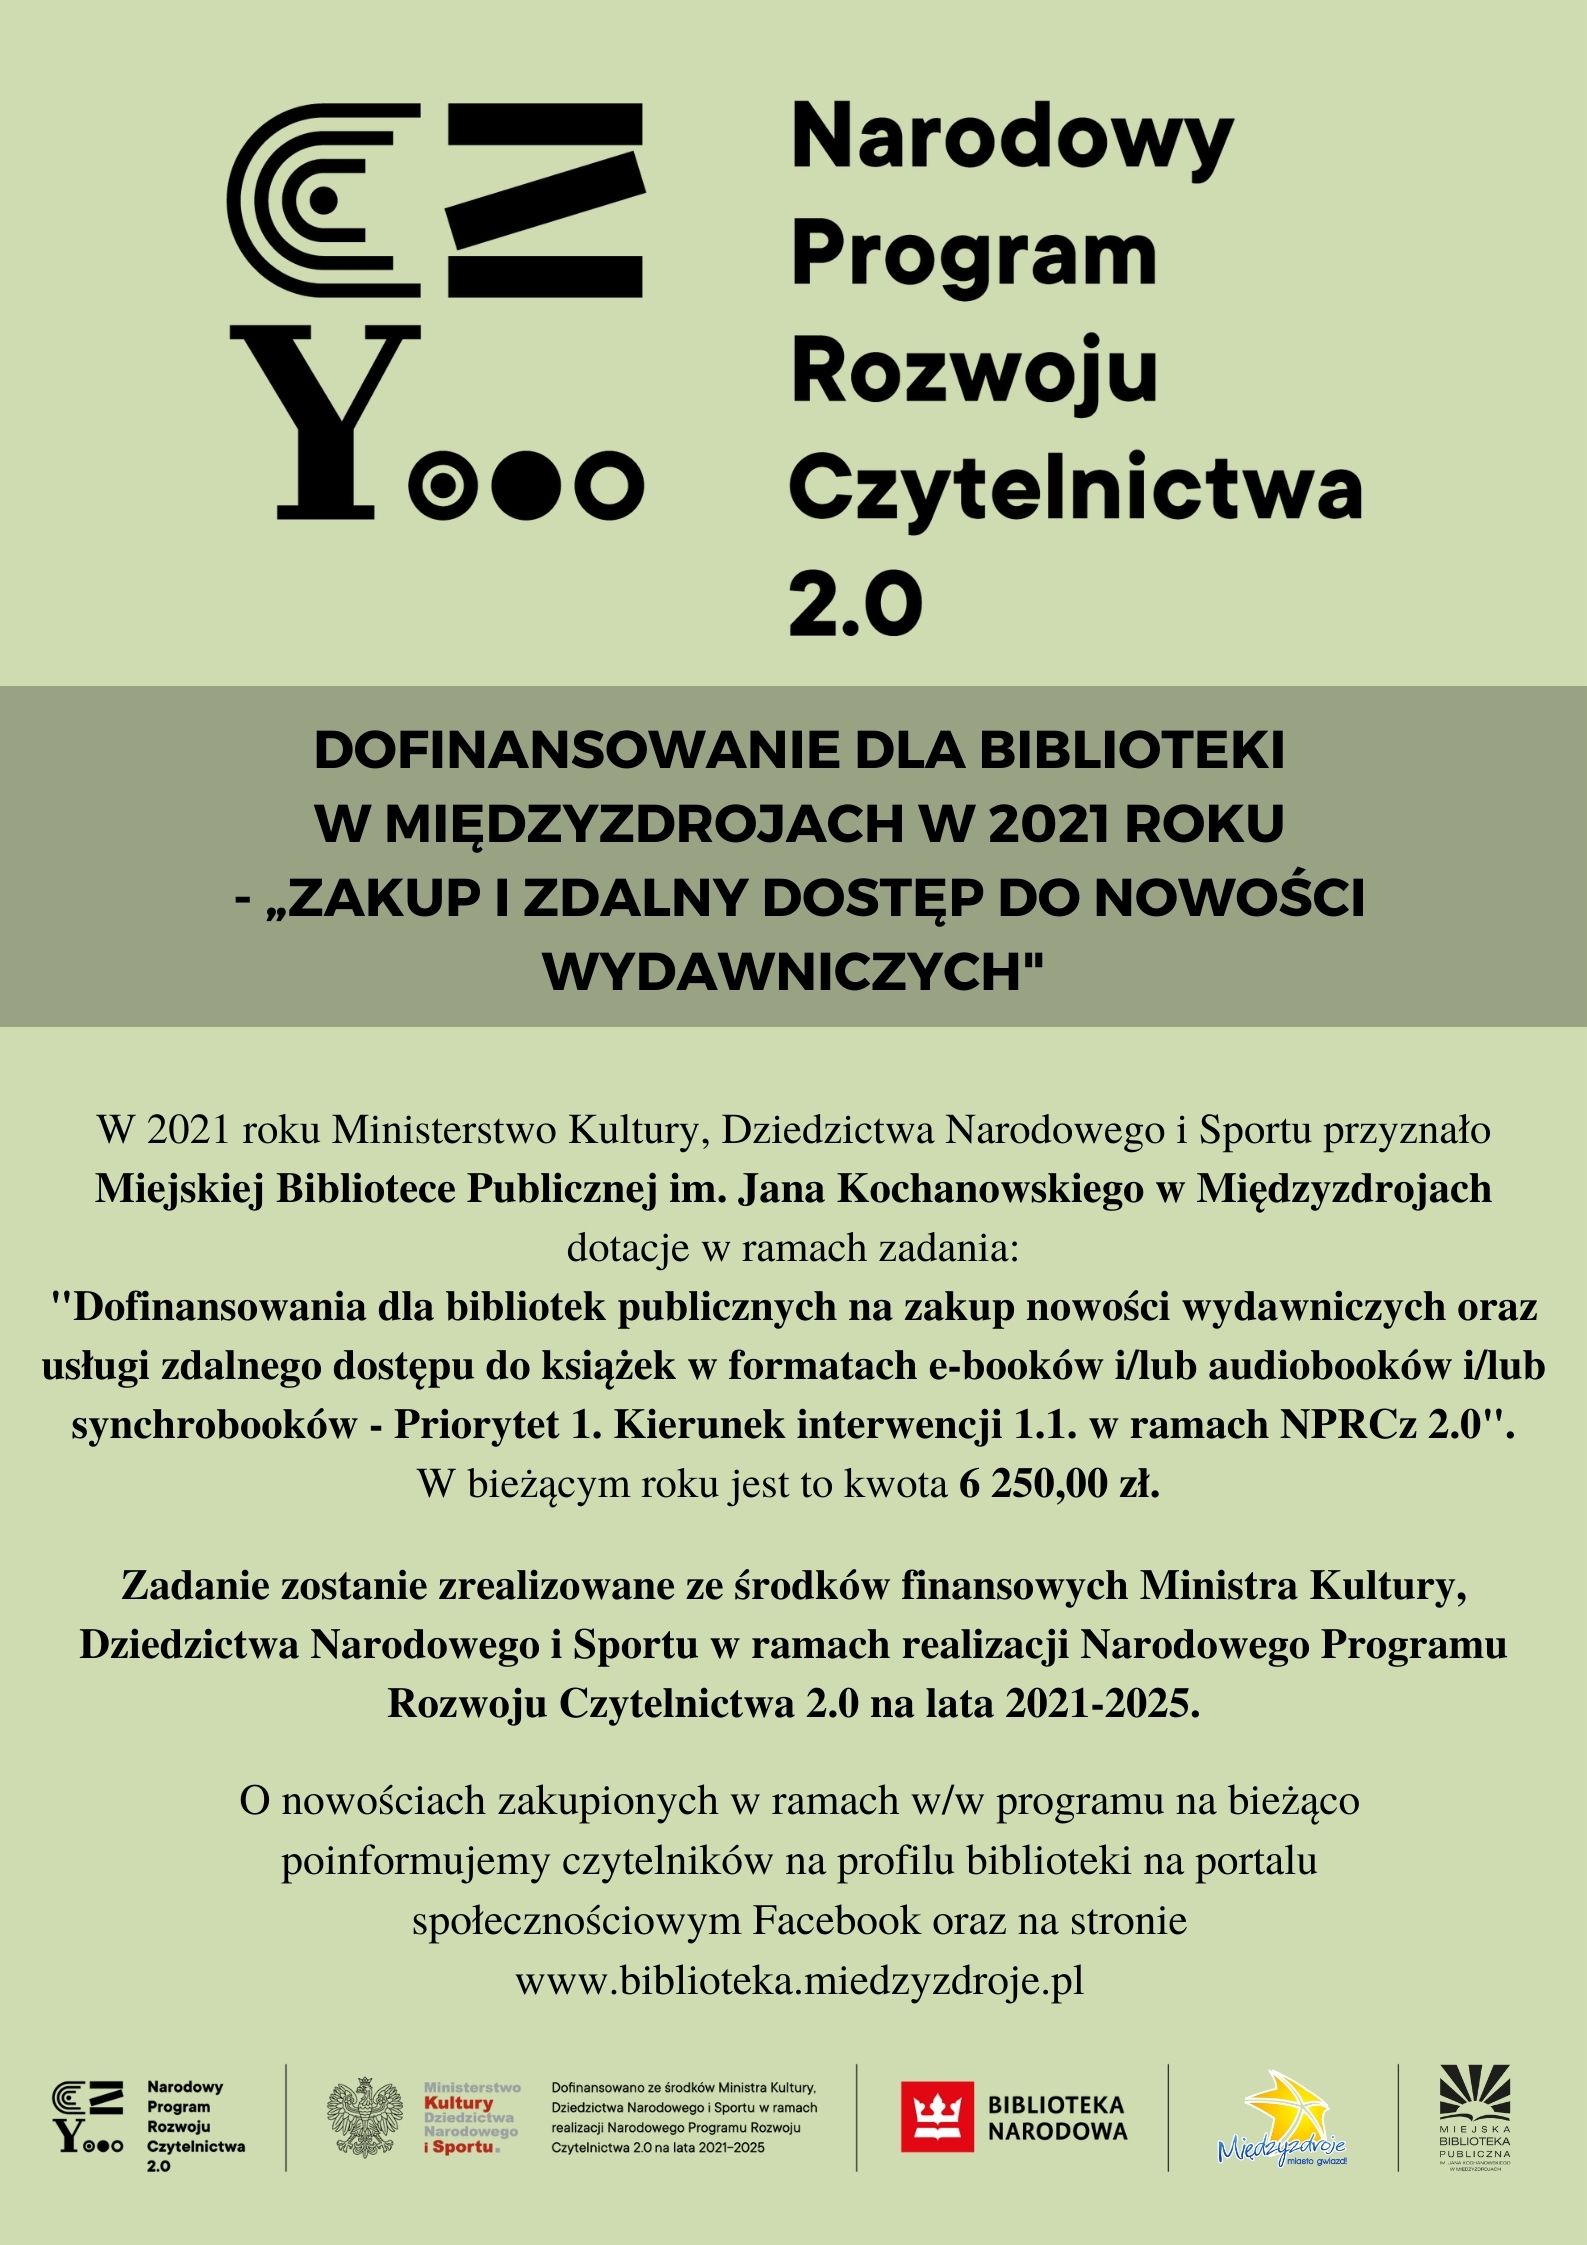 Dofinansowanie dla Biblioteki w Międzyzdrojach w 2021 roku - „Zakup i zdalny dostęp do nowości wydawniczych” 6 250,00 zł